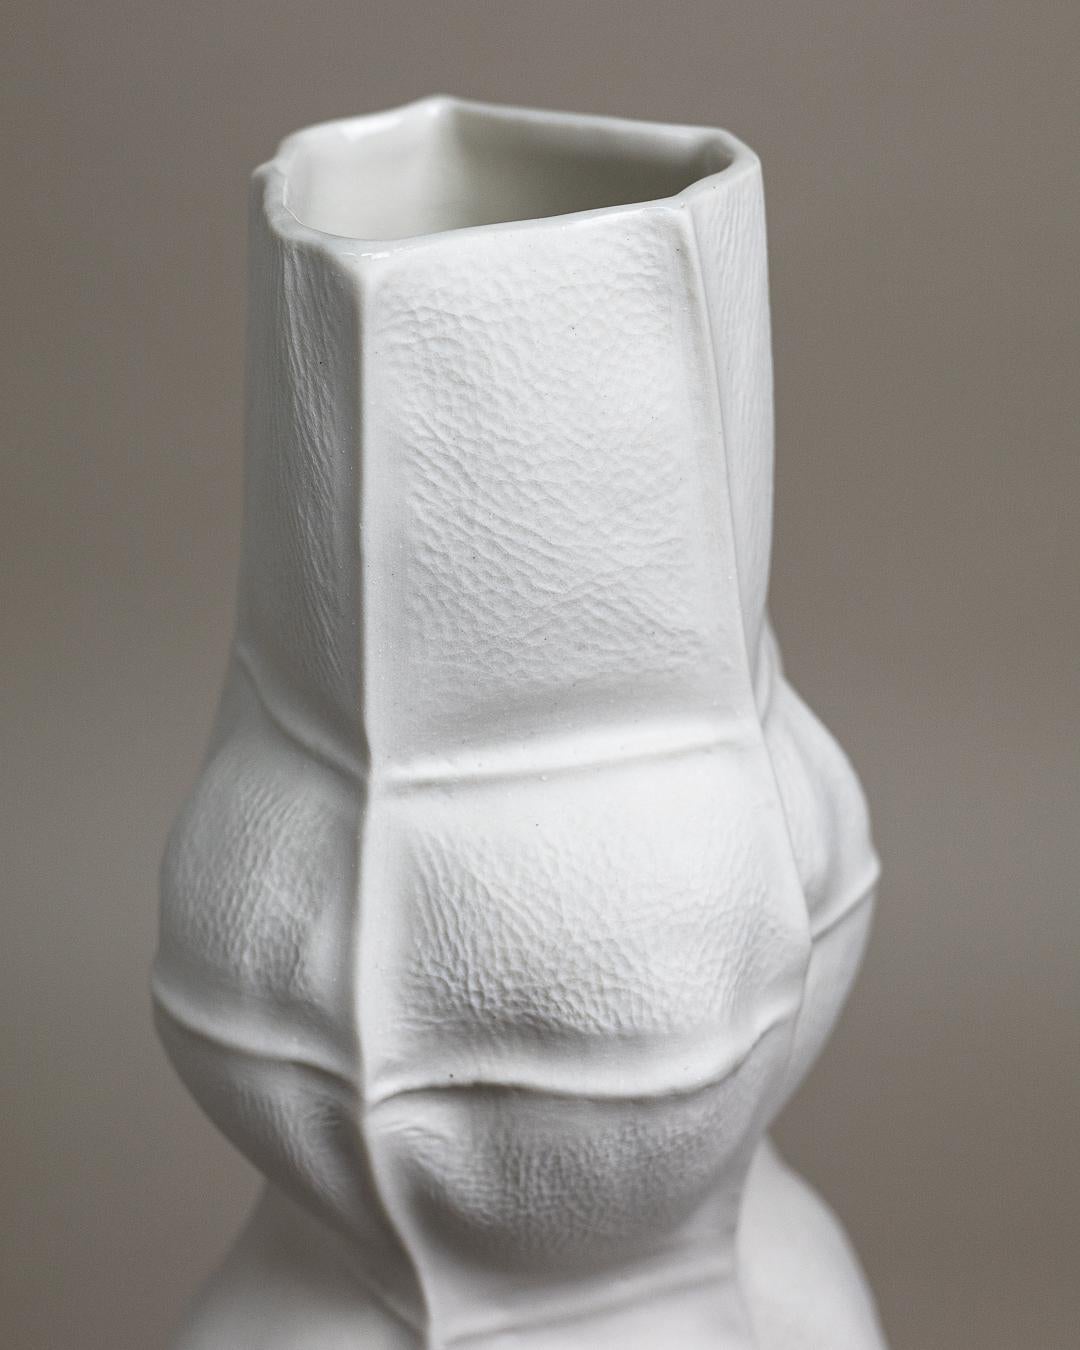 Un grand vase à fleurs en porcelaine avec une surface organique et semblable à du tissu. Un vernis transparent est appliqué sur la surface intérieure. En raison du processus de production, chaque vase est unique. 

La pièce est étanche et retient